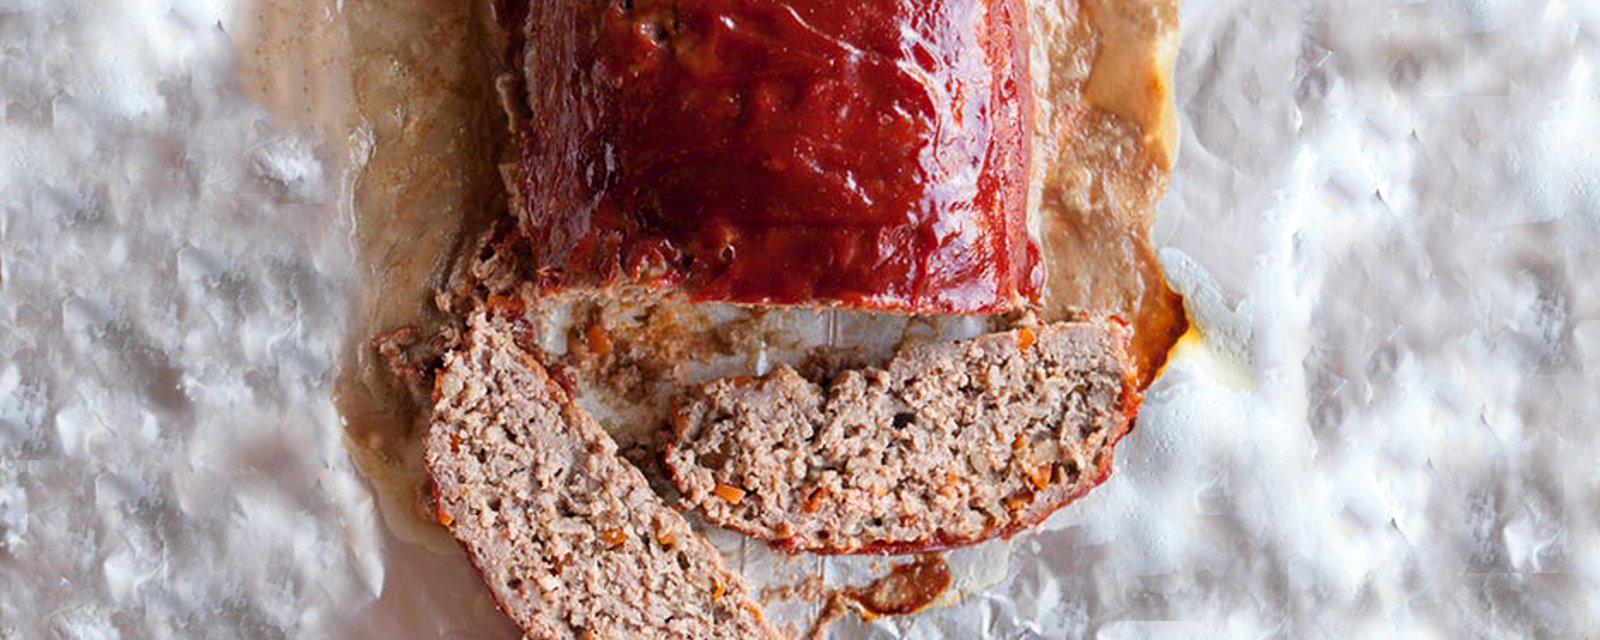 Ce pain de viande ne vous réserve pas de surprises… Juste le bon goût de la tradition !